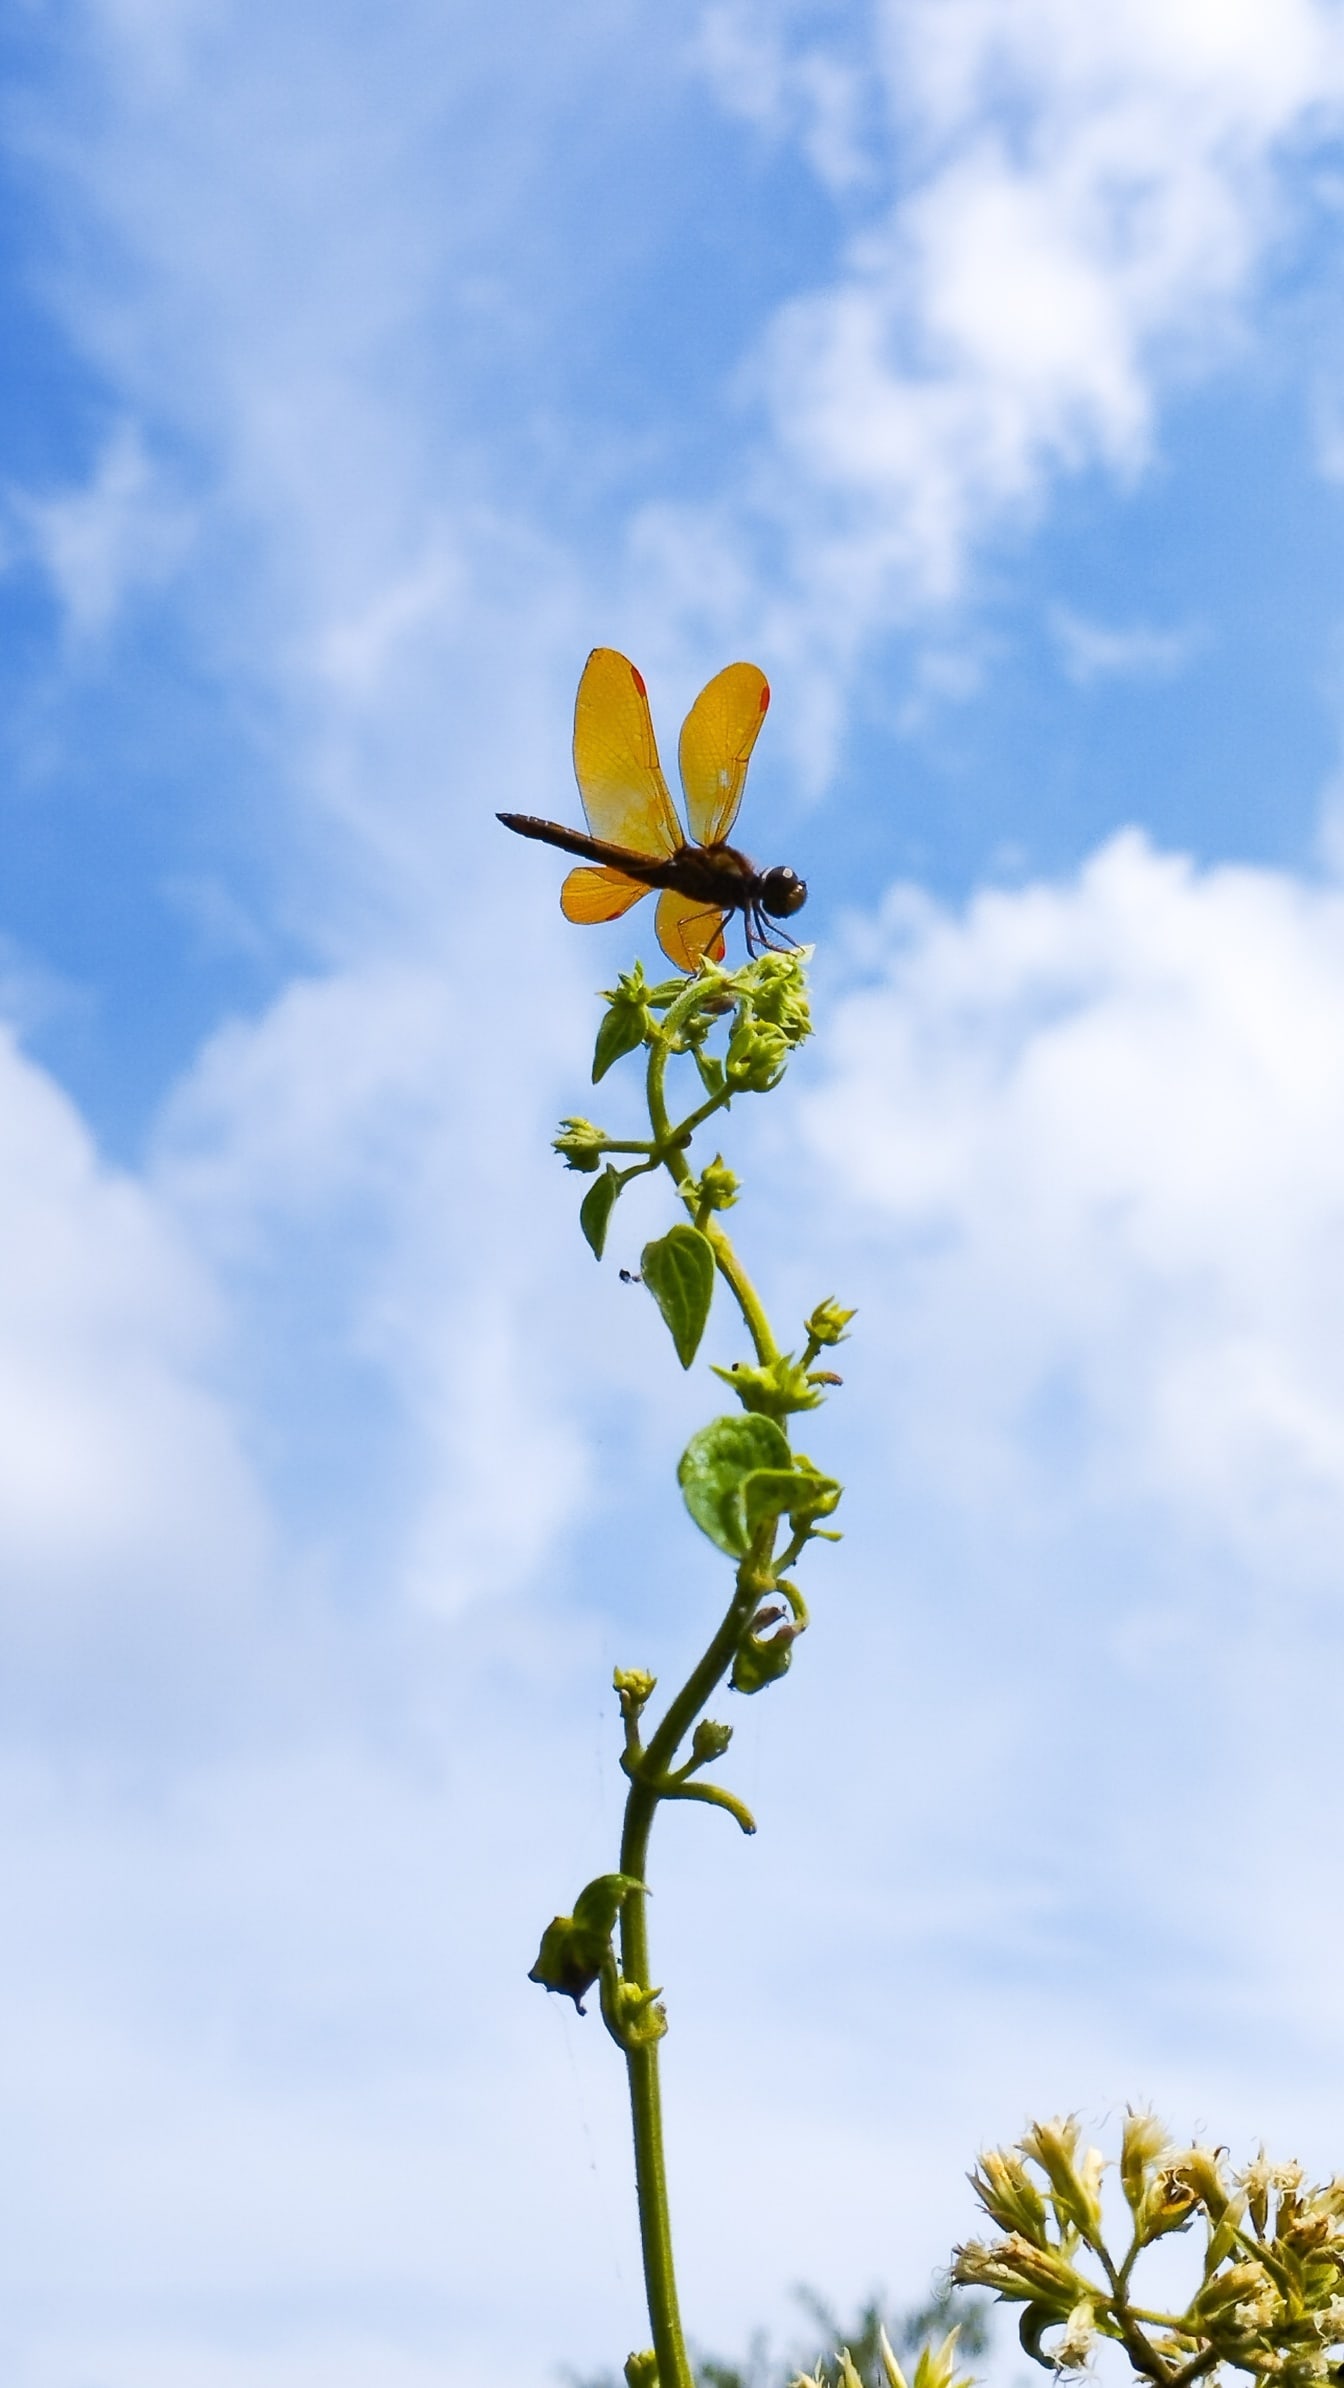 东方琥珀翅蜻蜓 (Perithemis tenera) 在一株以蓝天为背景的植物上